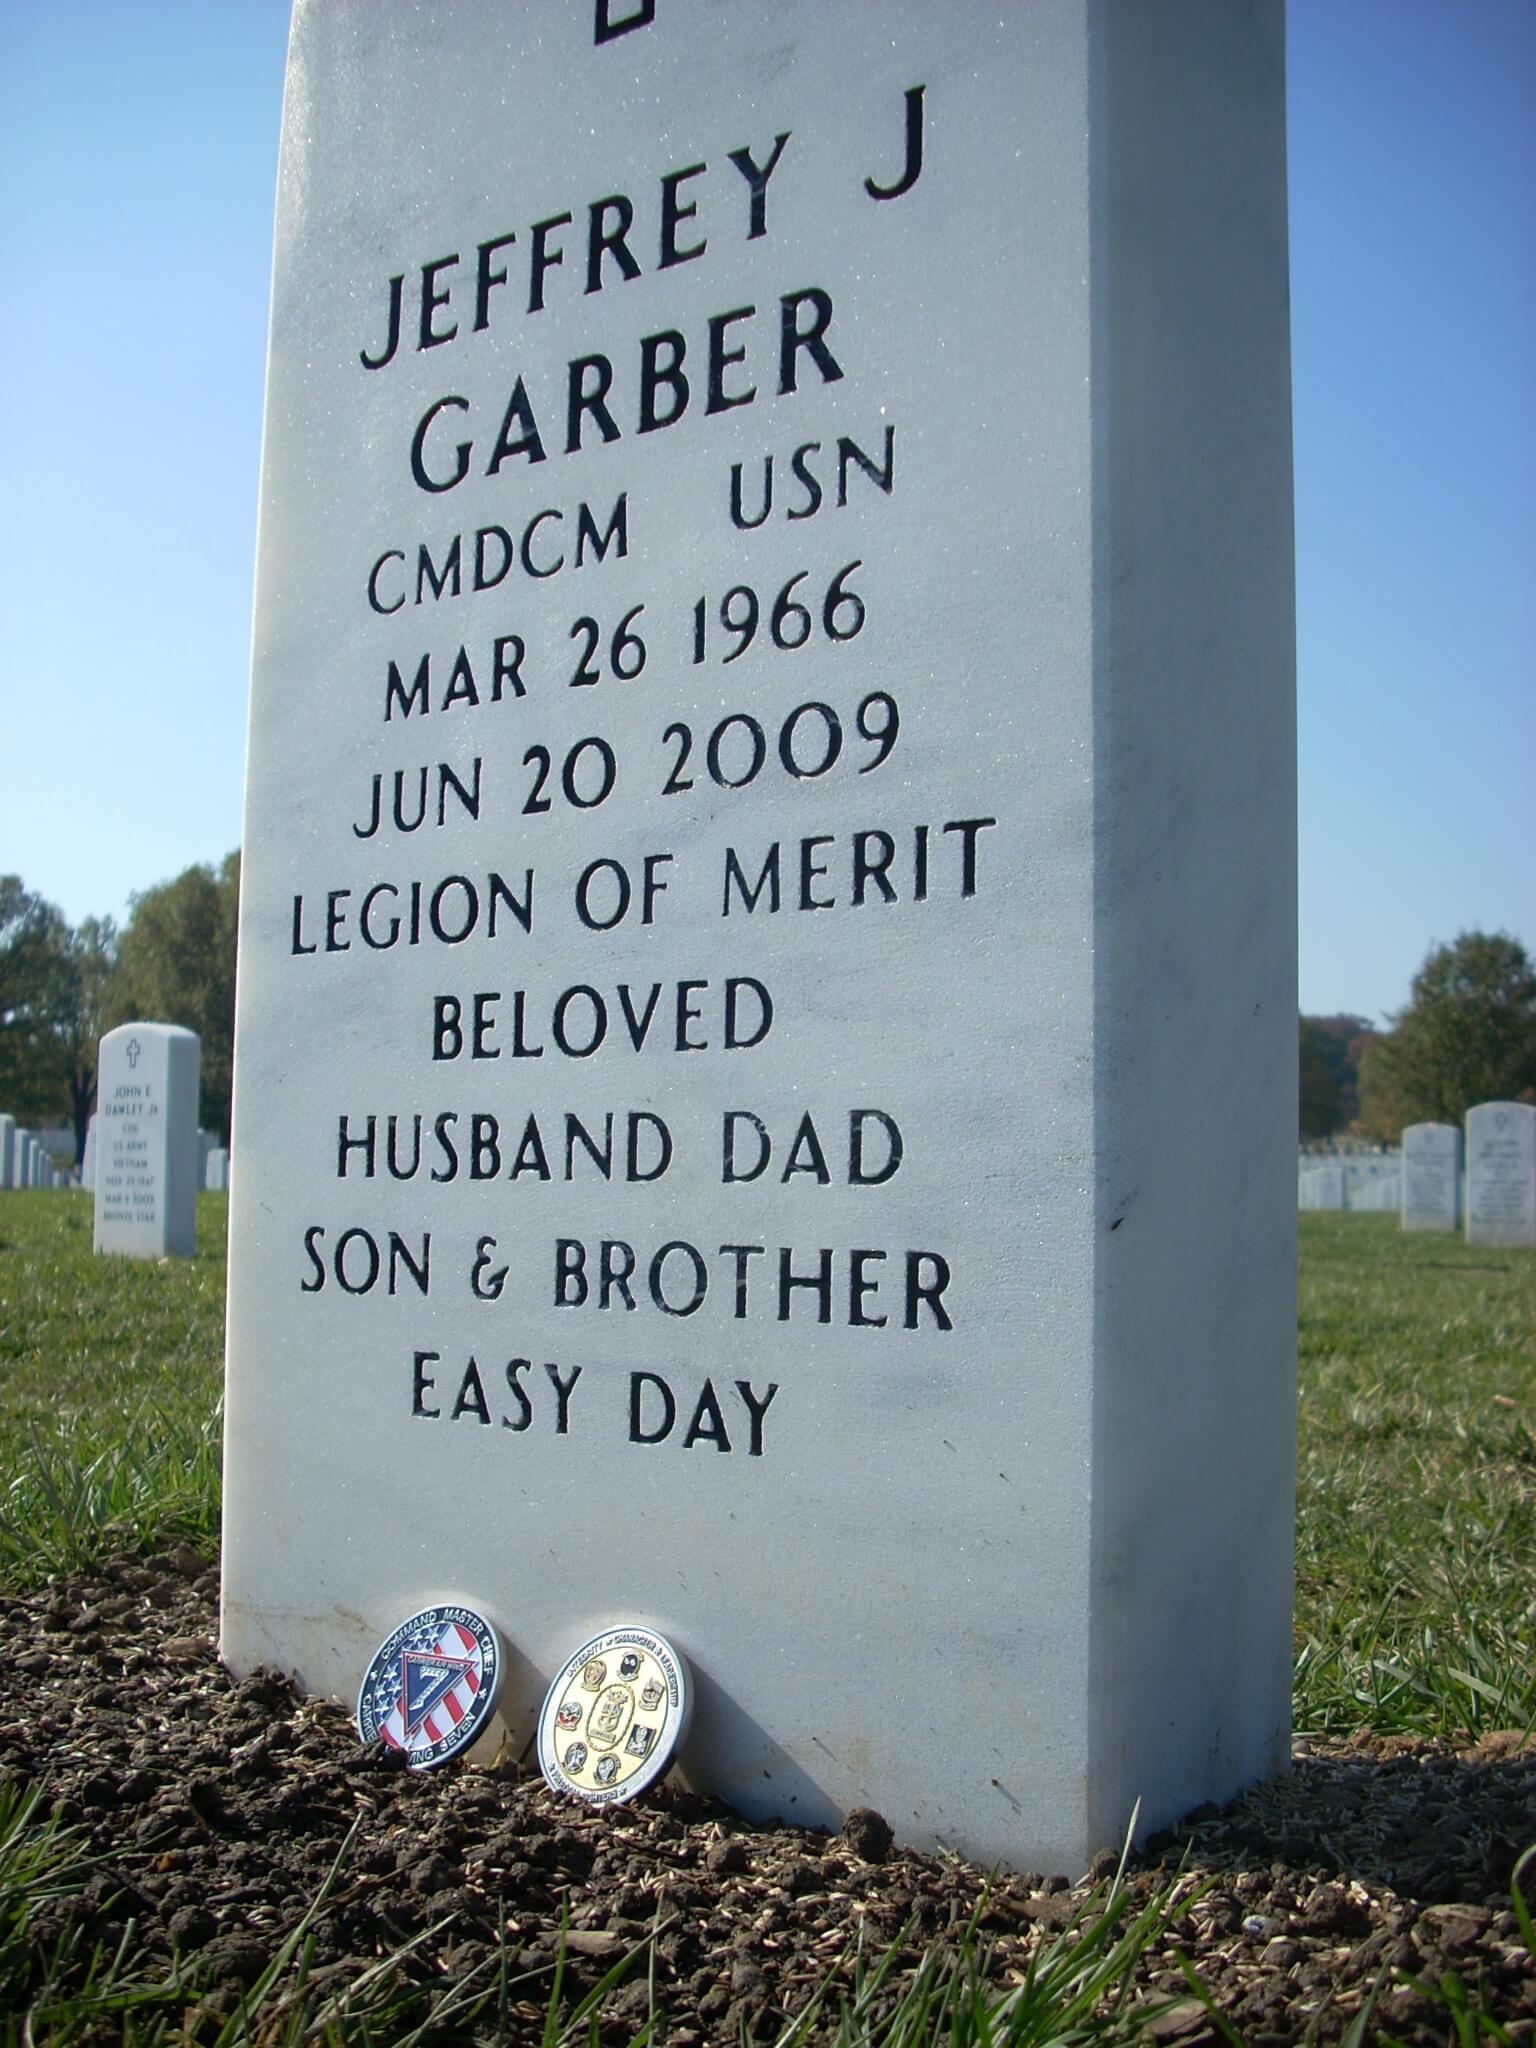 jjgarber-gravesite-photo-by-holly-july-2011-005